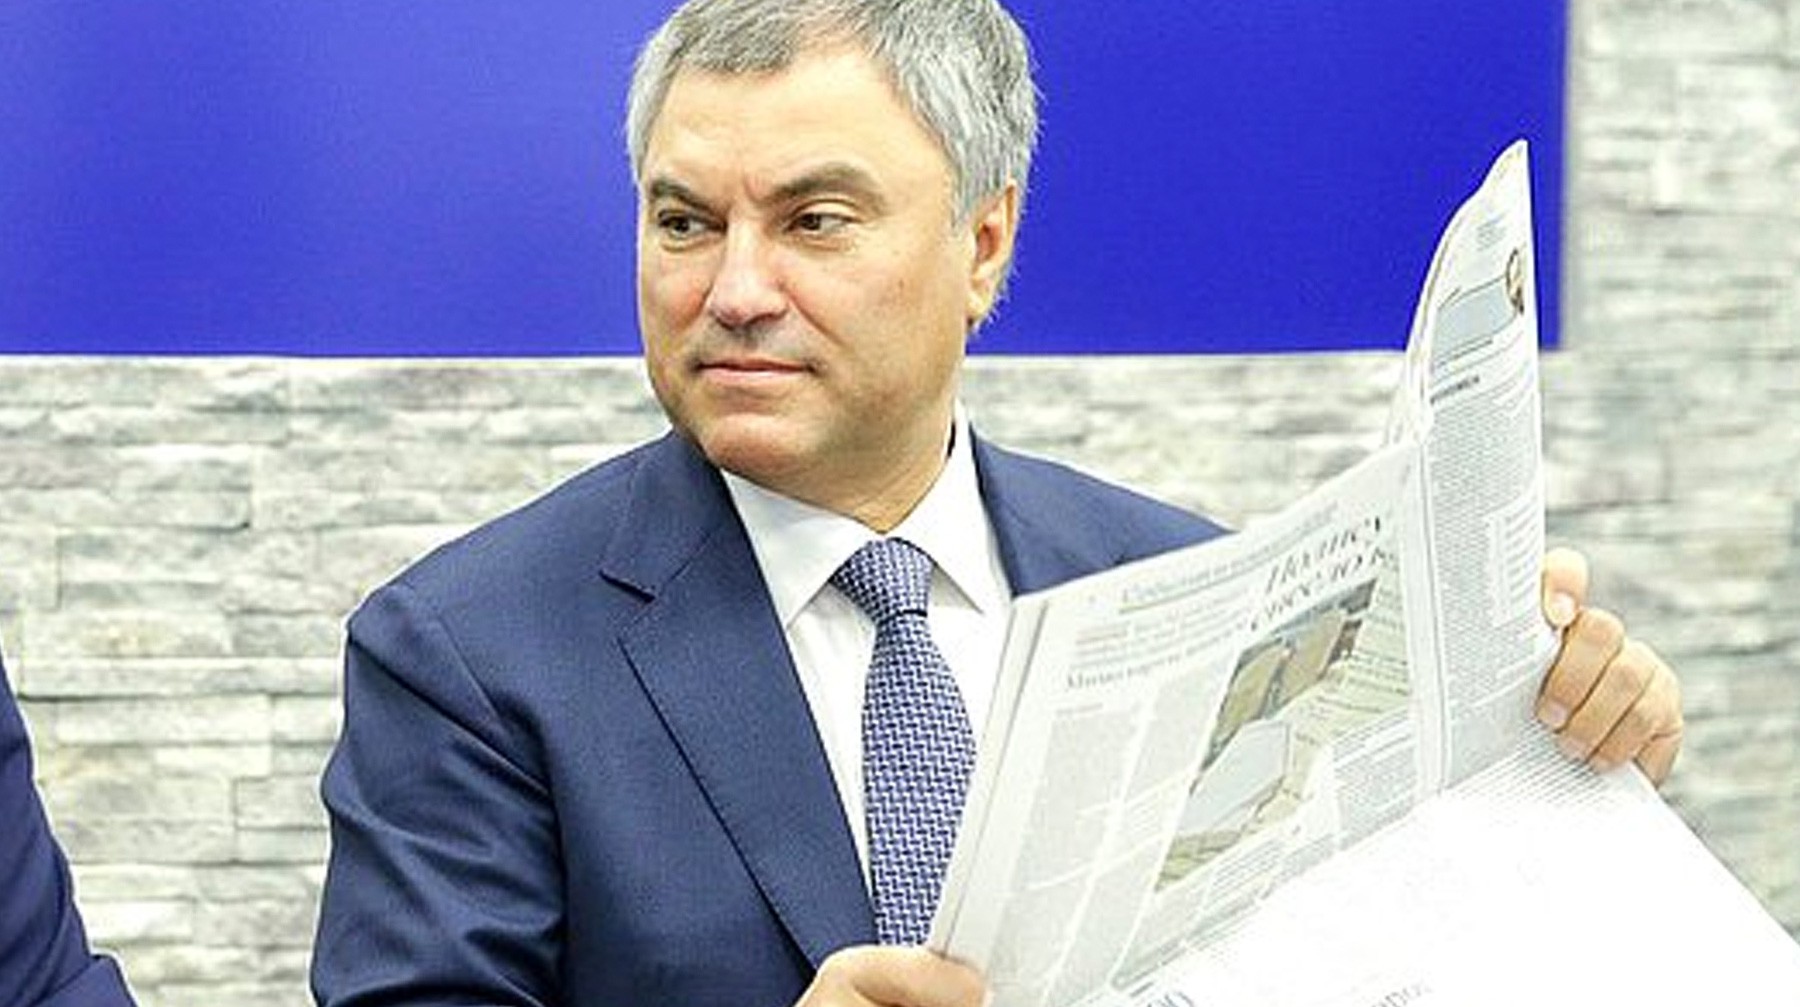 Dailystorm - Володин пообещал отказаться от депутатской надбавки к пенсии